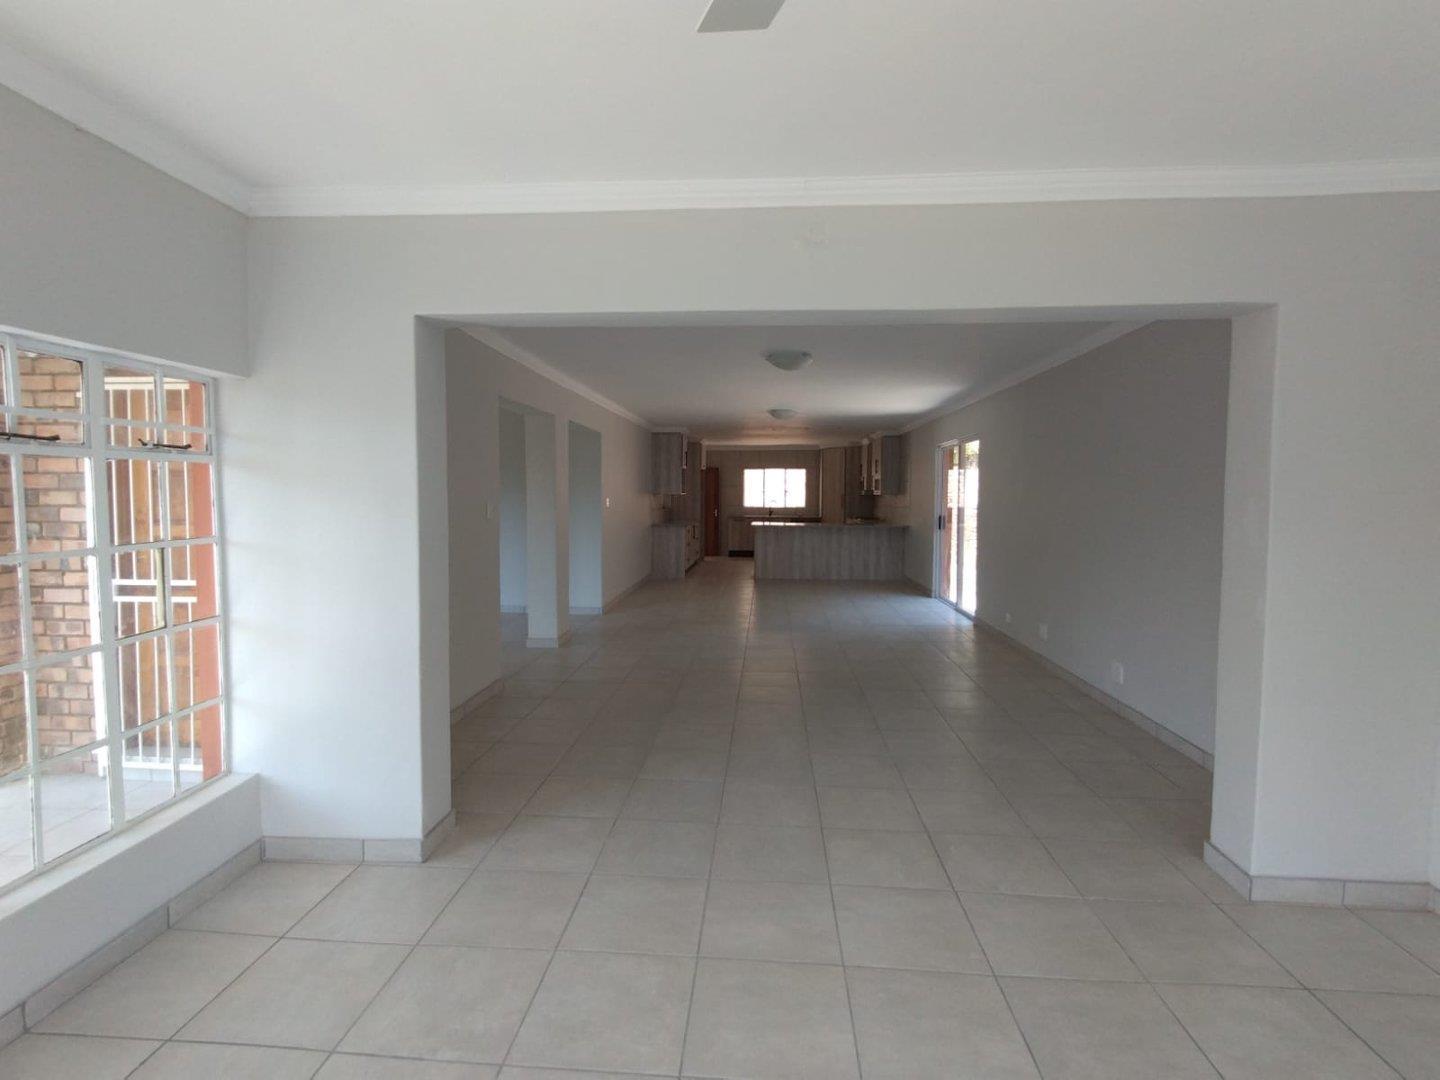 3 Bedroom Property for Sale in Sonheuwel Mpumalanga